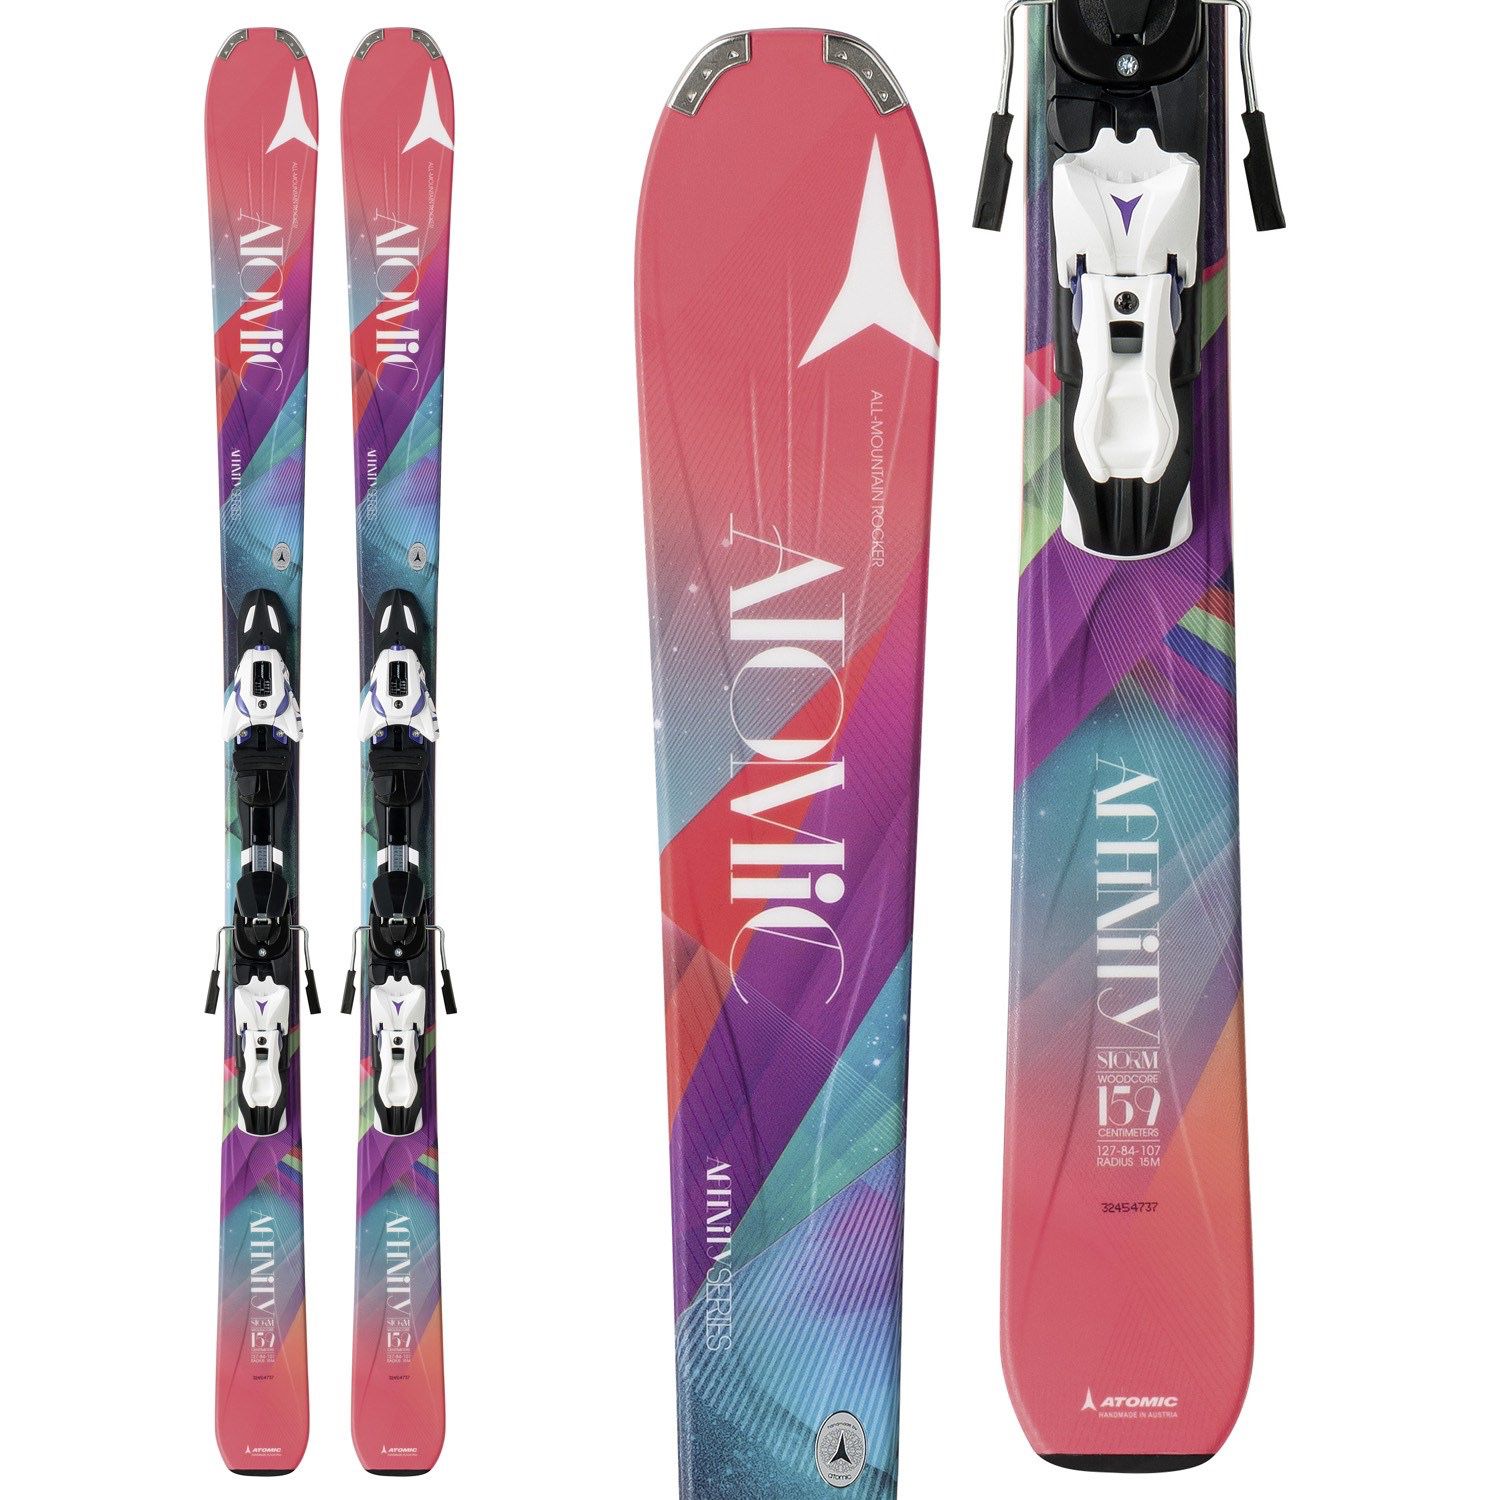 Affinity Storm 167cm Womens Ski w/ Atomic XTO 10 Lady Binding BRAND NEW IN BOX